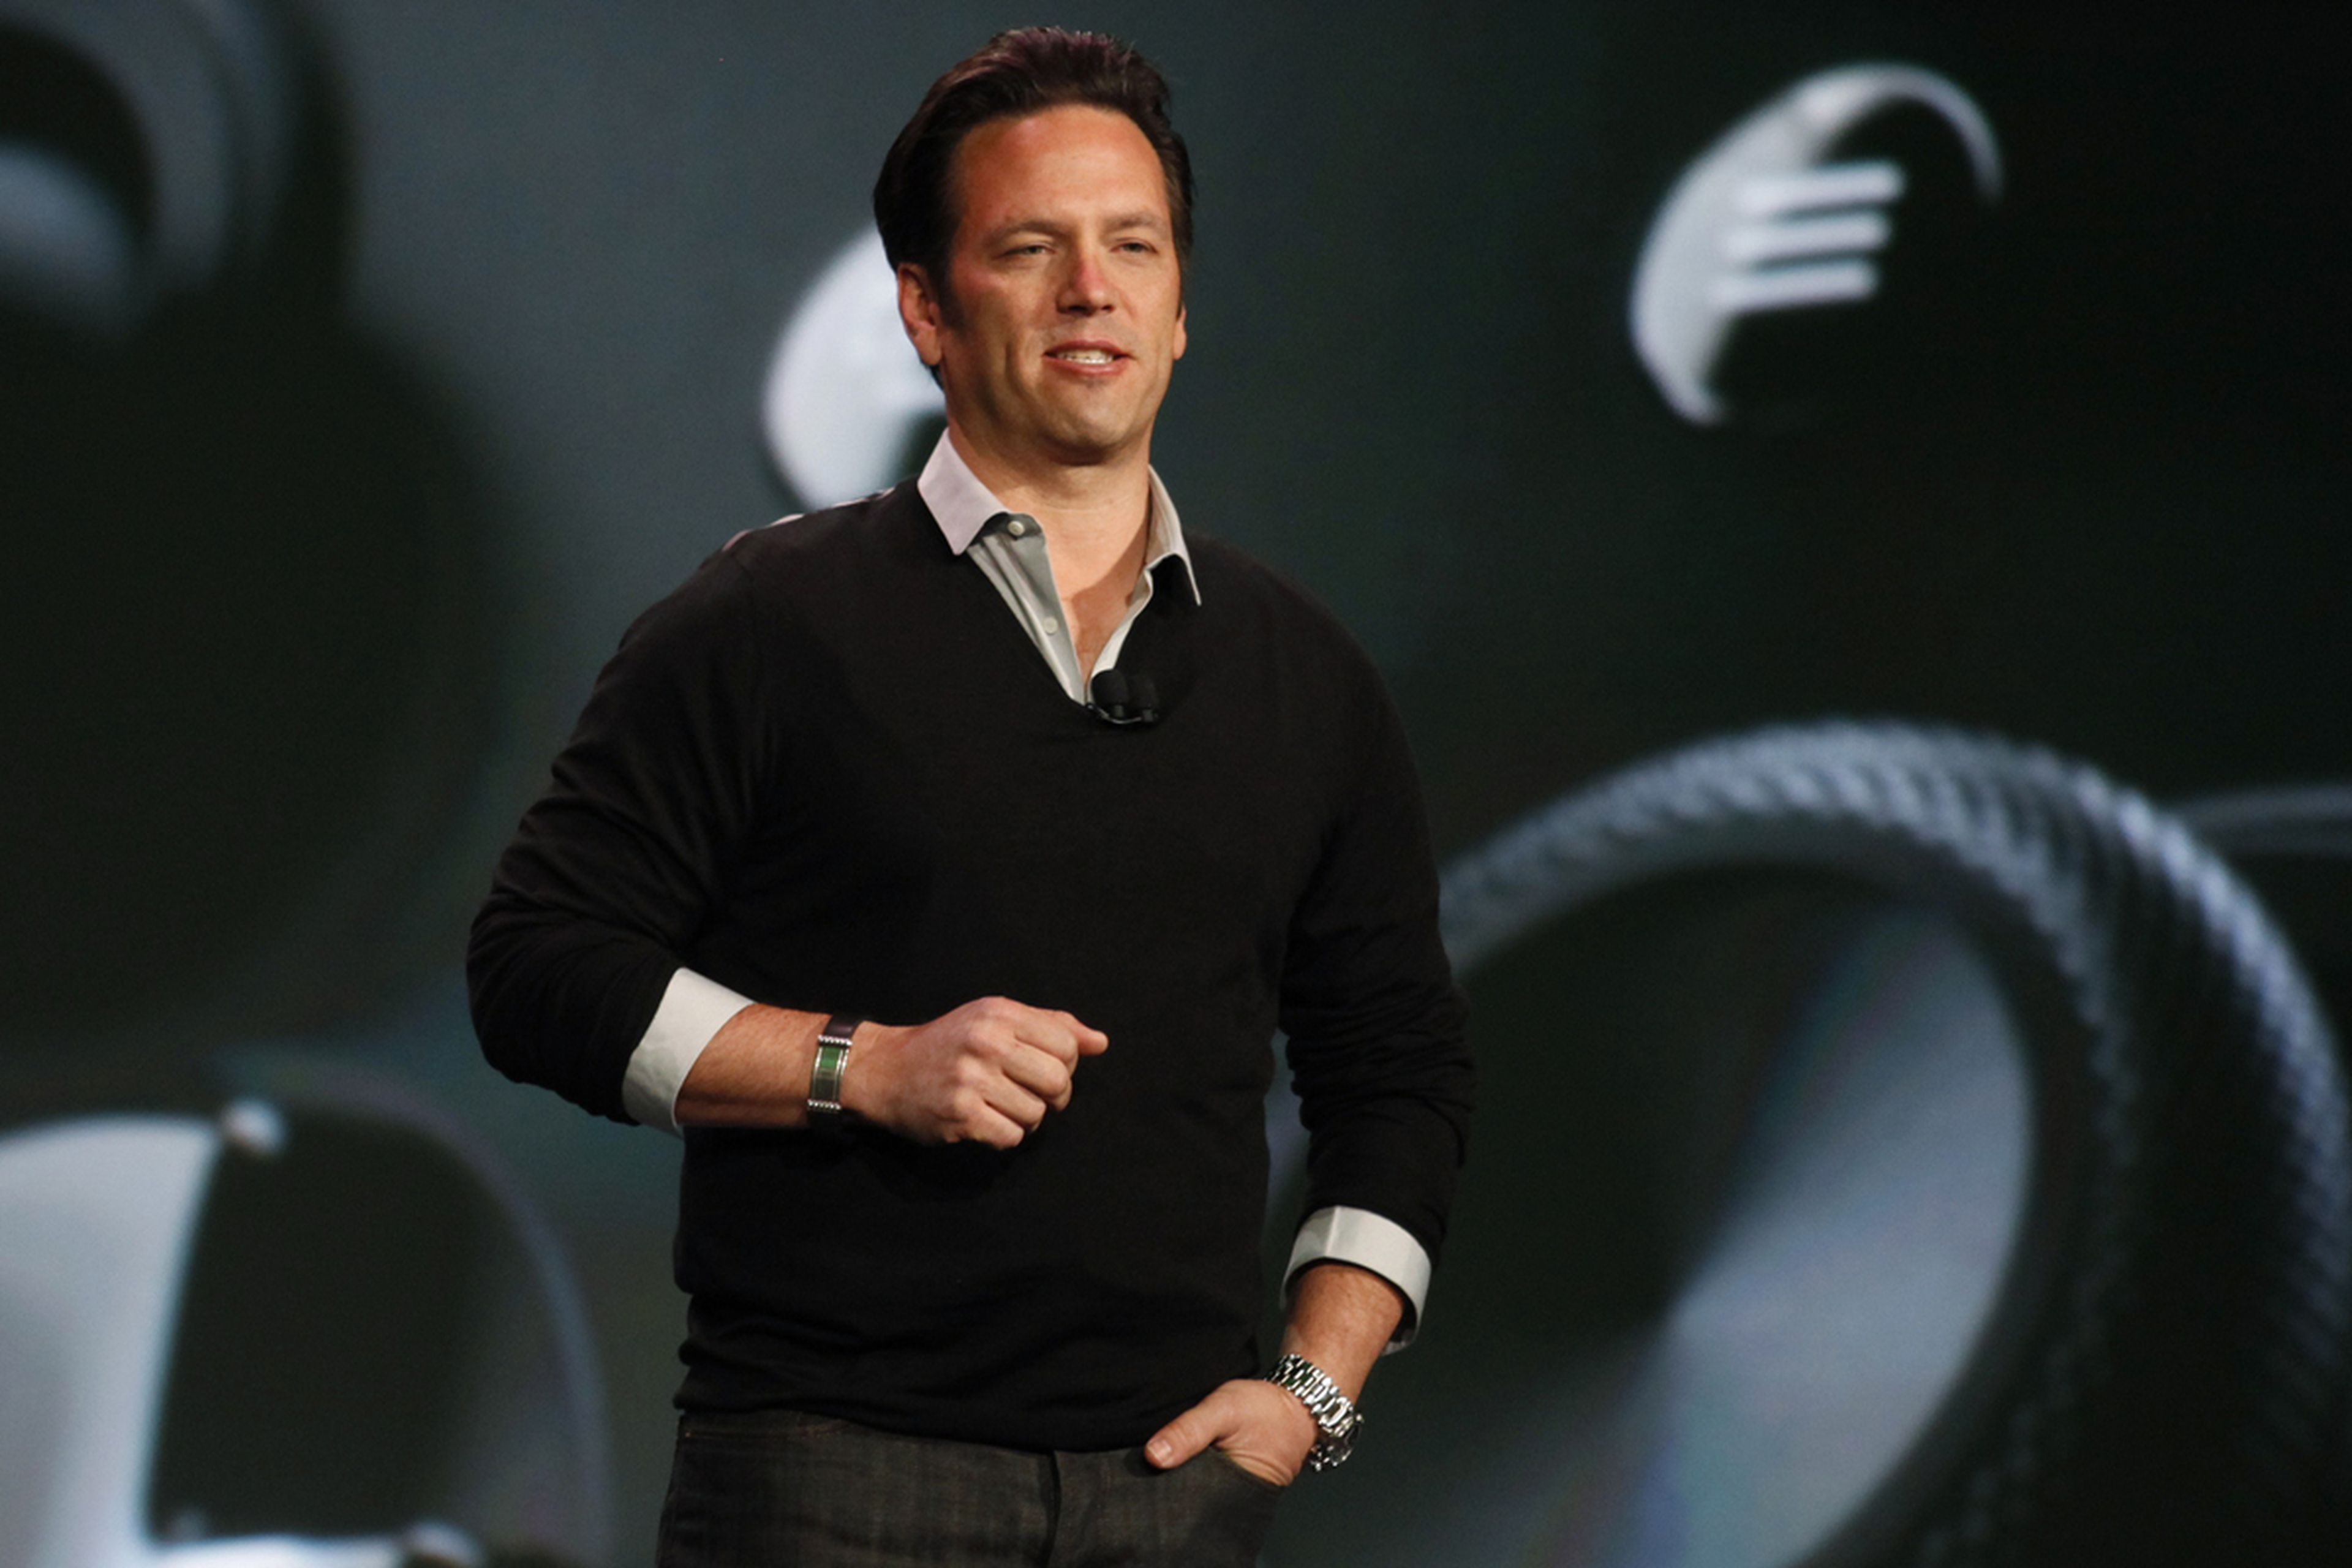 Phil Spencer quiere que Xbox One sea "la mejor plataforma para los mejores creadores"